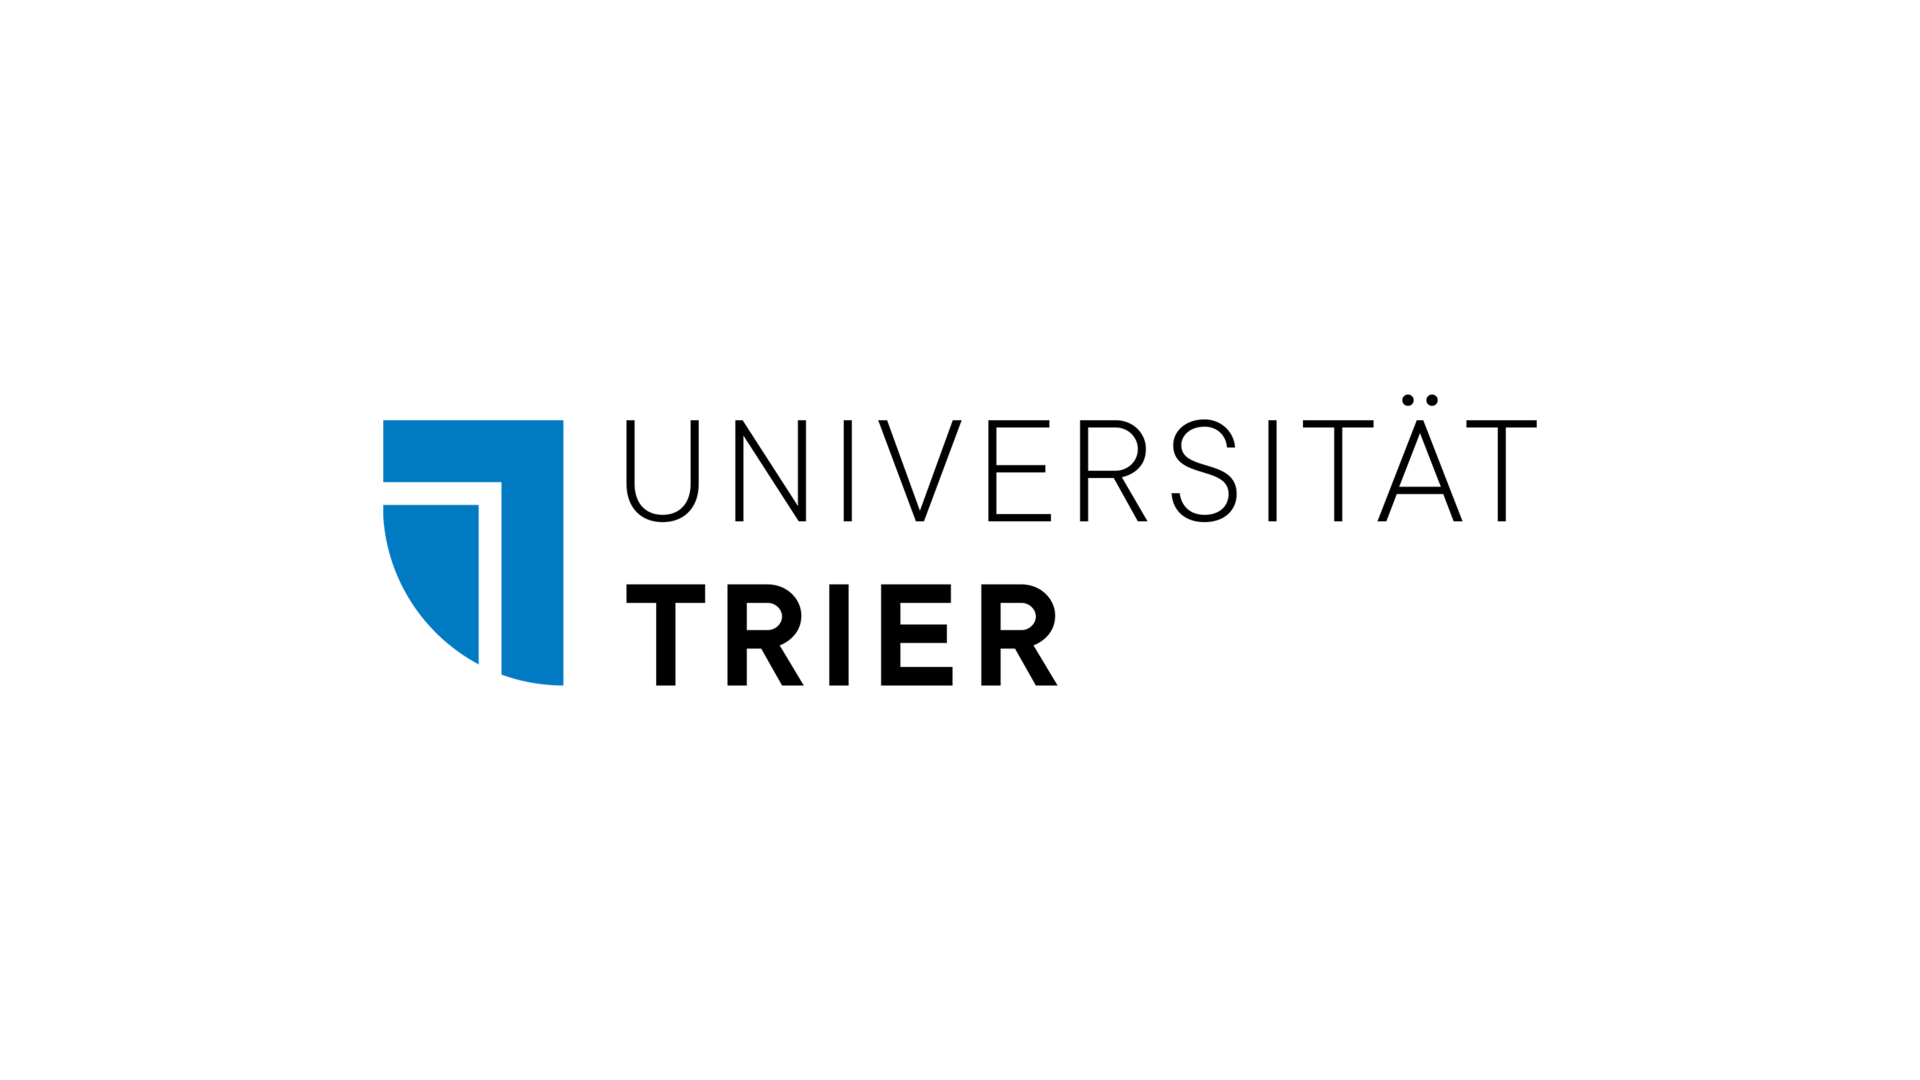 Logo: Universität Trier